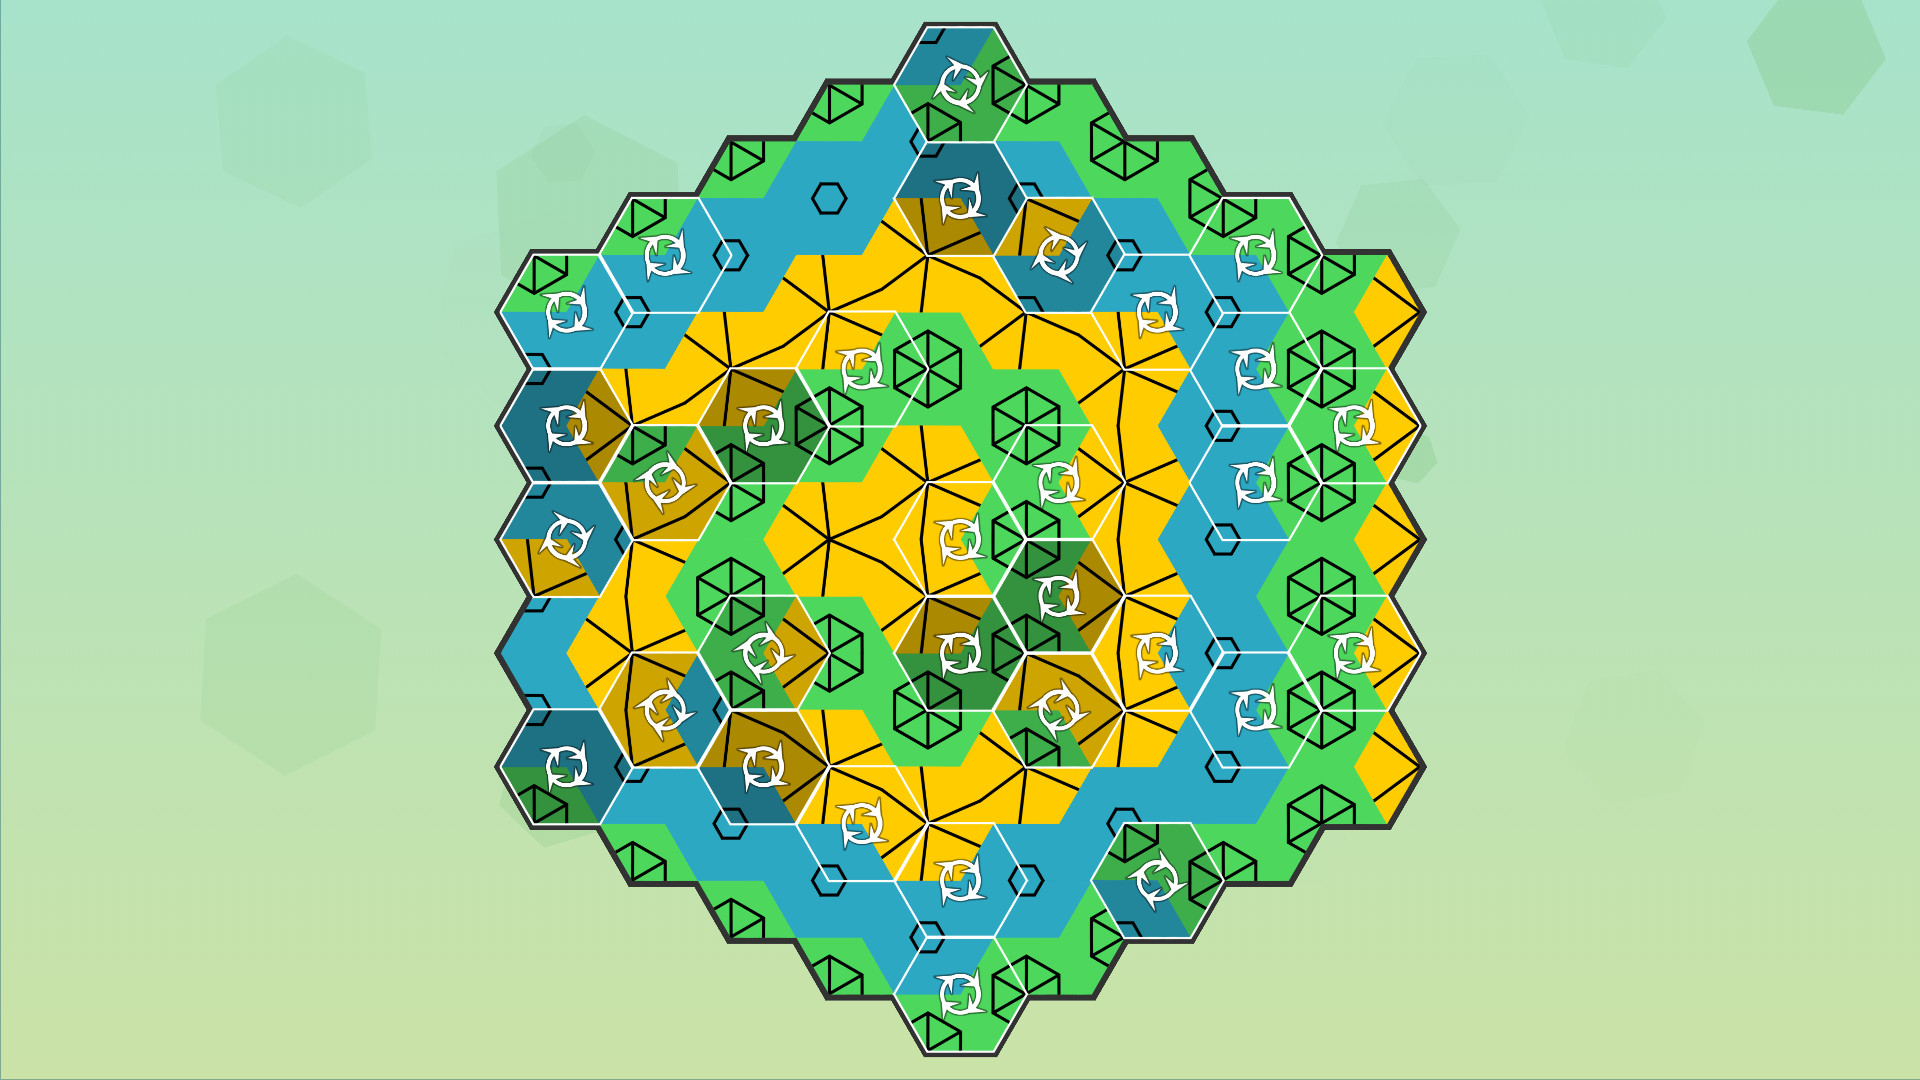 Aurora Hex - Pattern Puzzles Free Download